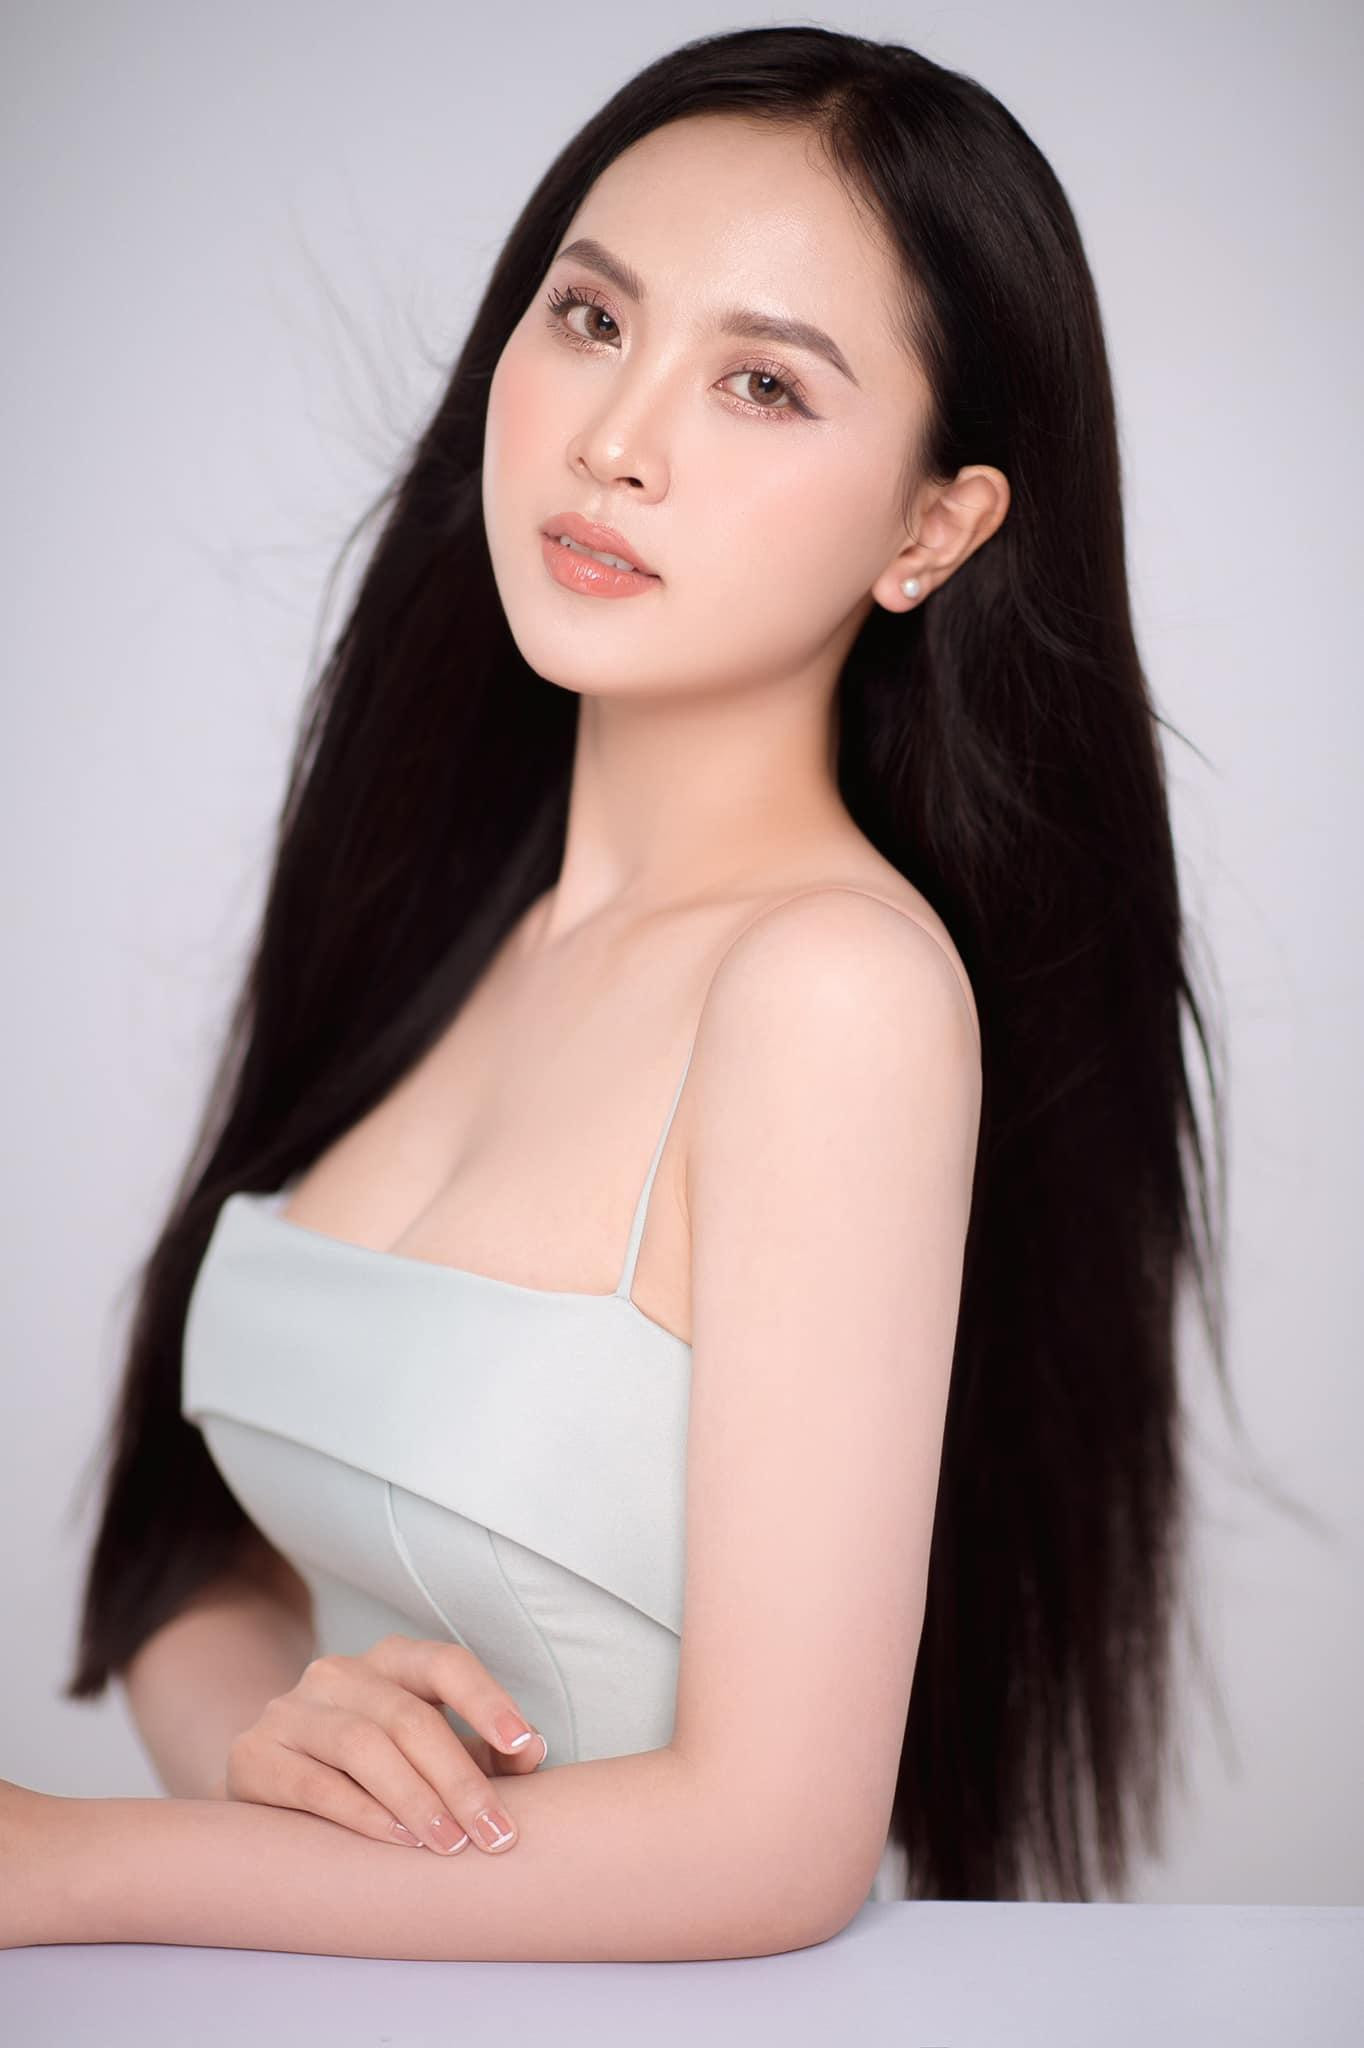 Nhan sắc ngọt ngào của người đẹp Nghệ An hai lần dự thi Hoa hậu Việt Nam ảnh 2